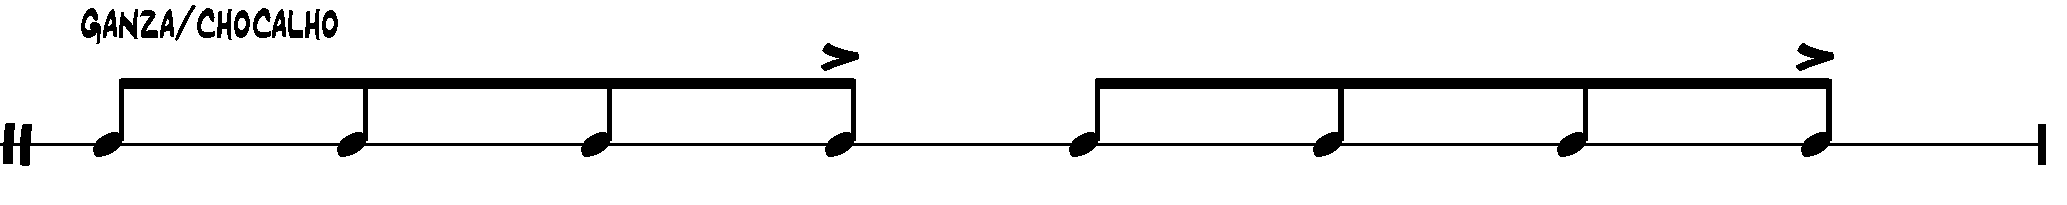 samba notation - ganza